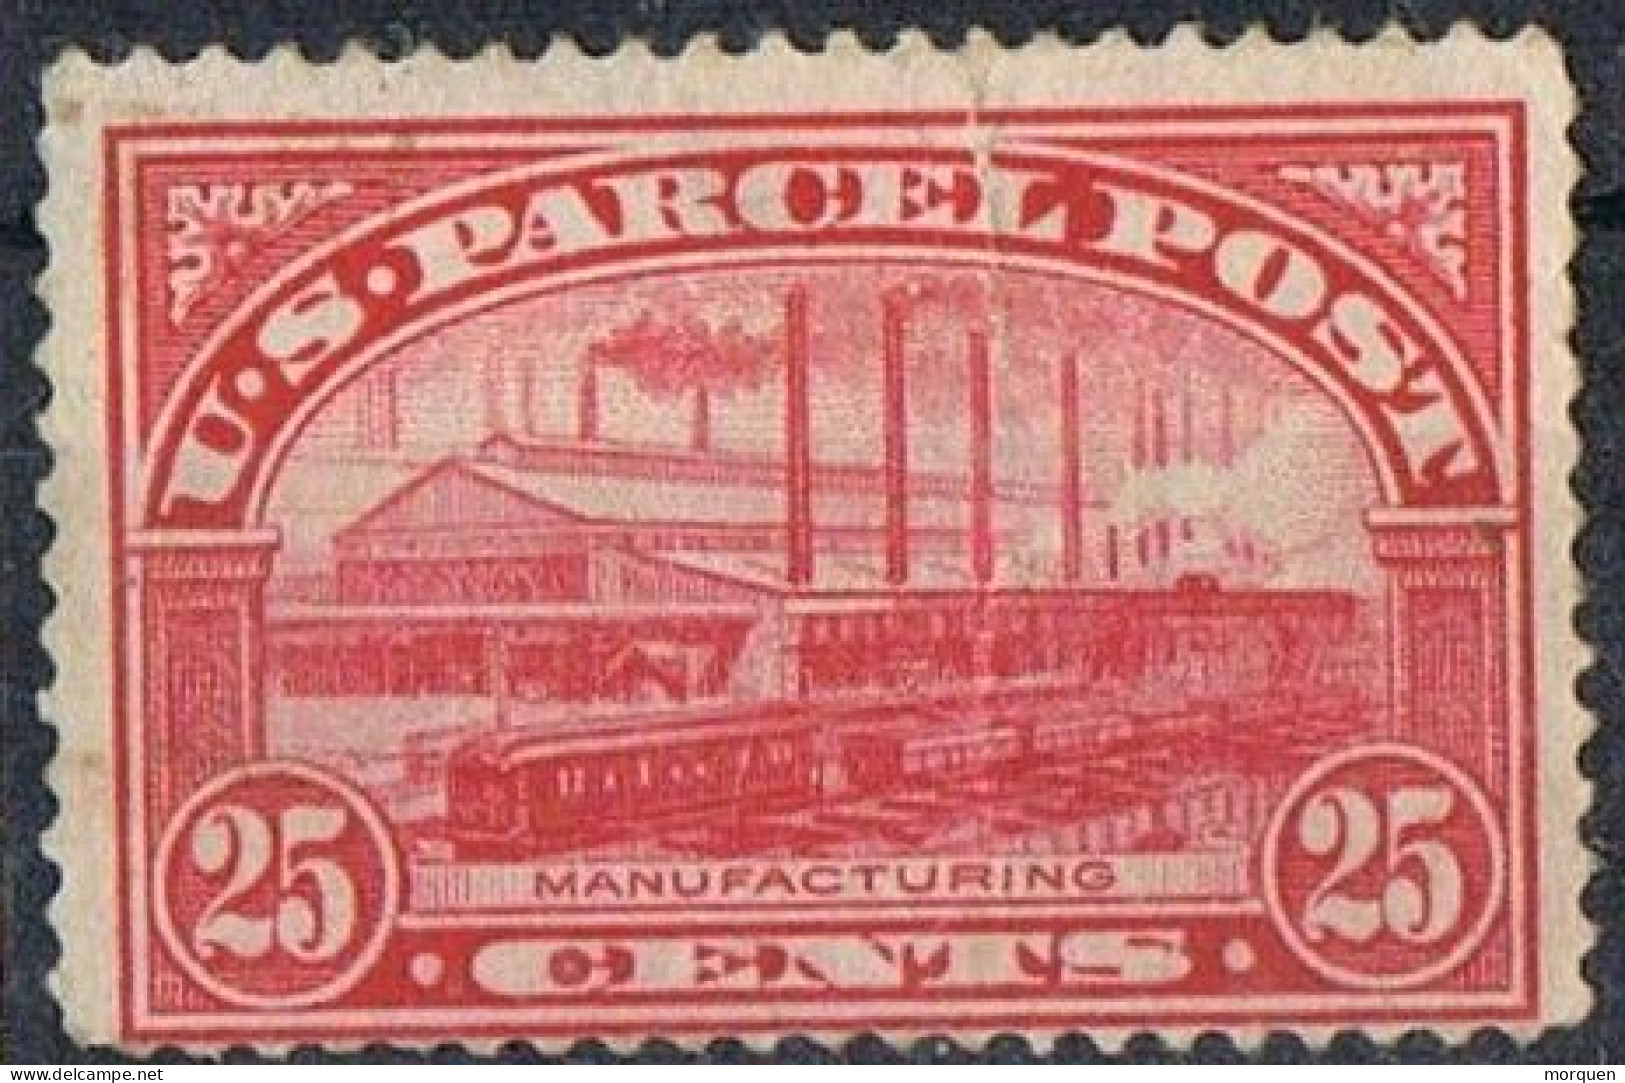 Sello 25 Ctvos Parcel Post  1912, Paquetes Postales USA ,  Yvert Num 9 * - Reisgoedzegels